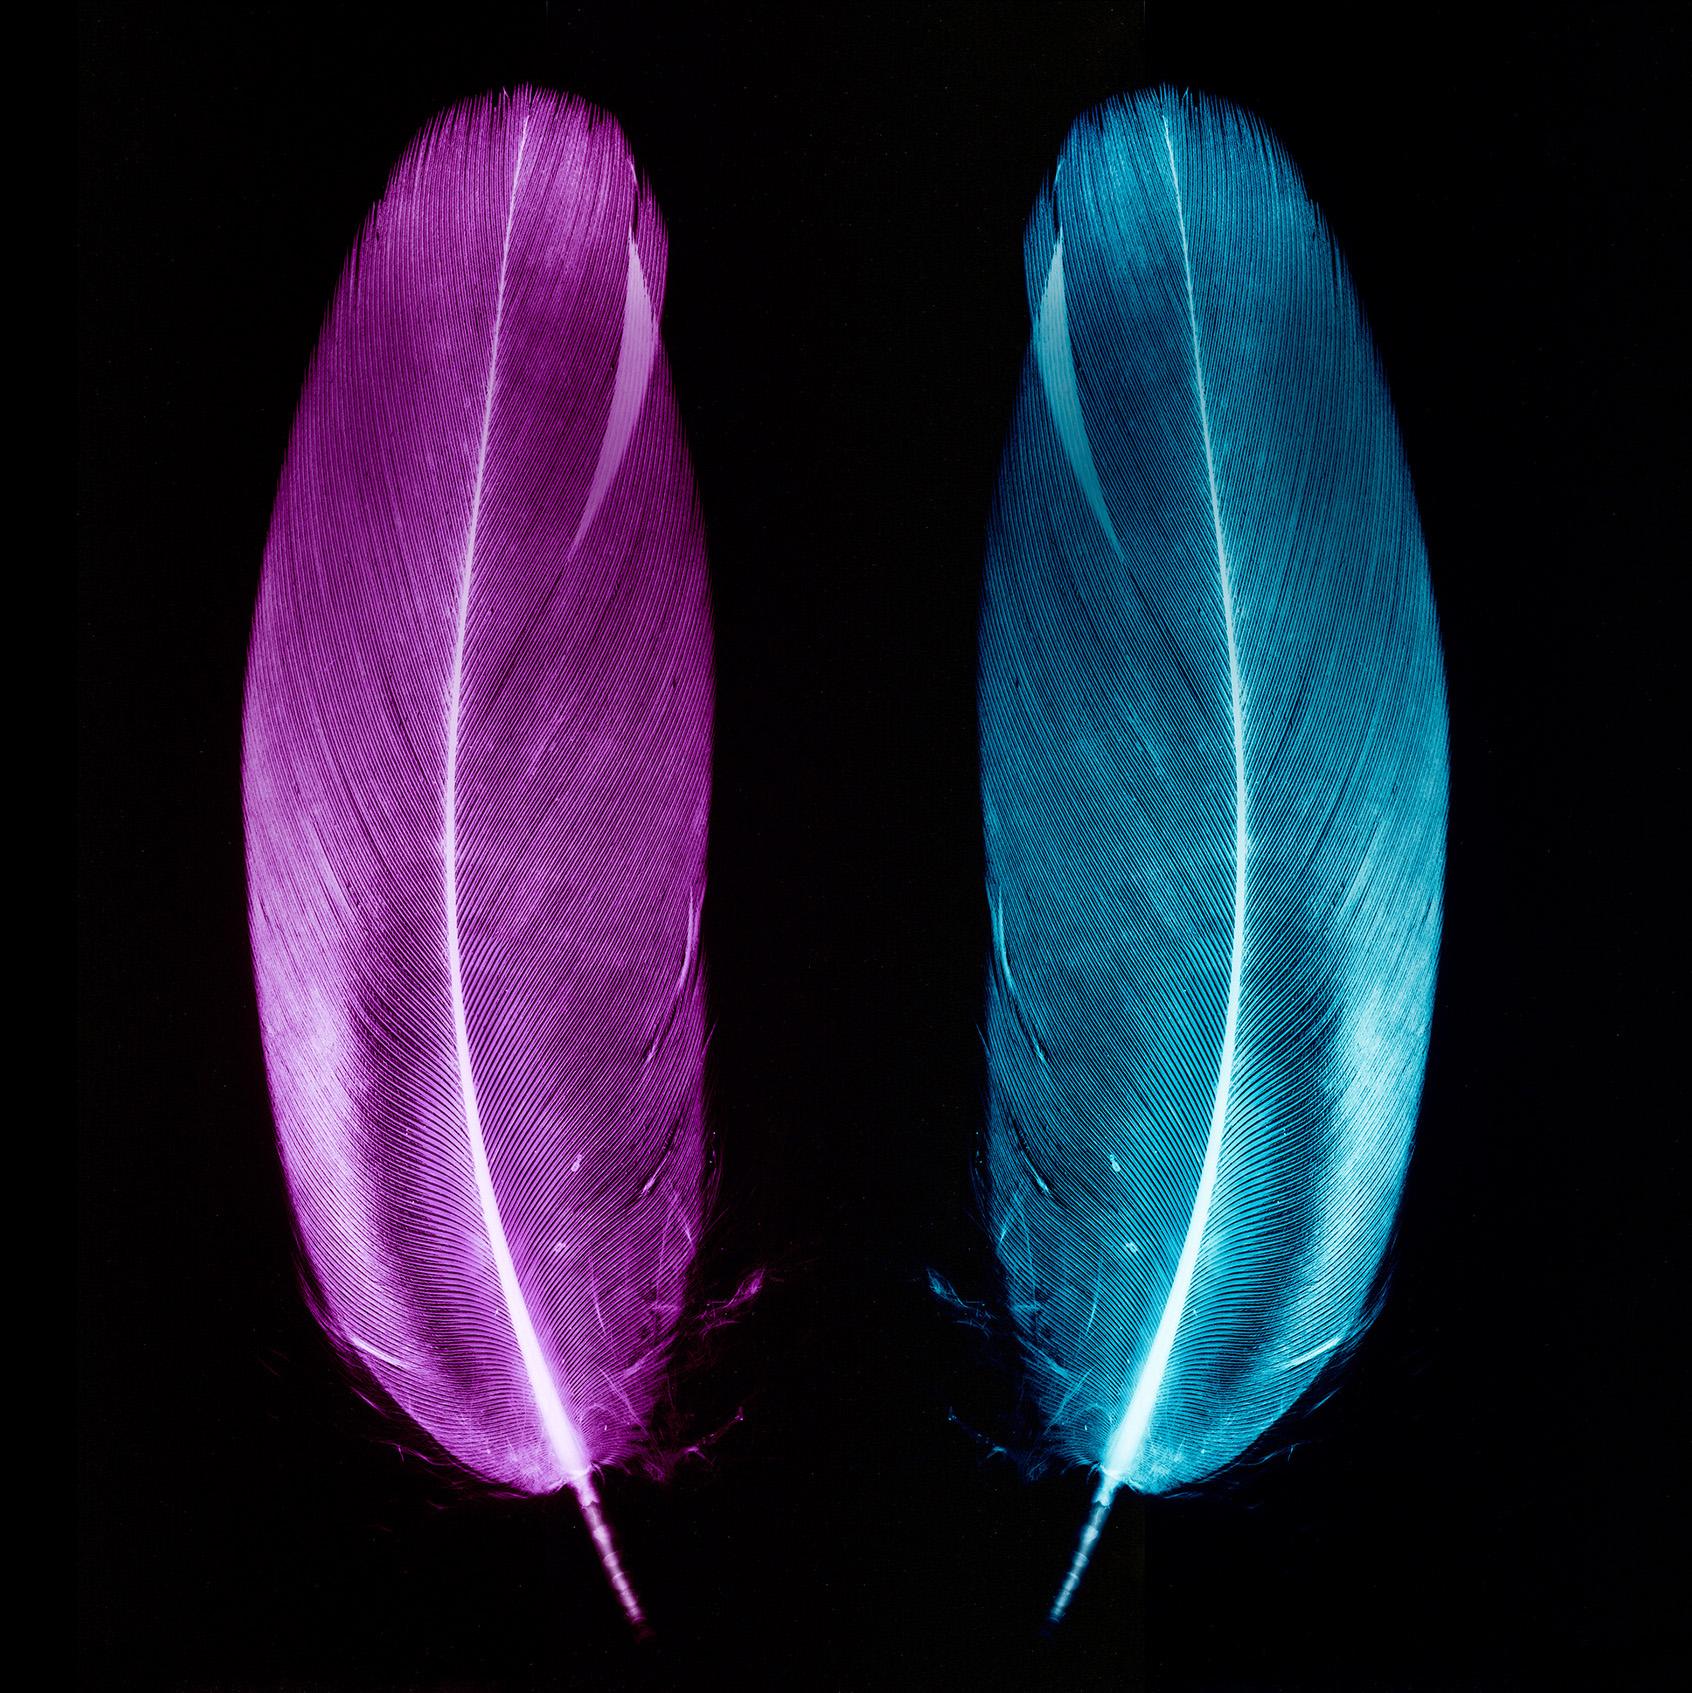 Paire de plumes prune et bleu glace - Photographie conceptuelle couleur